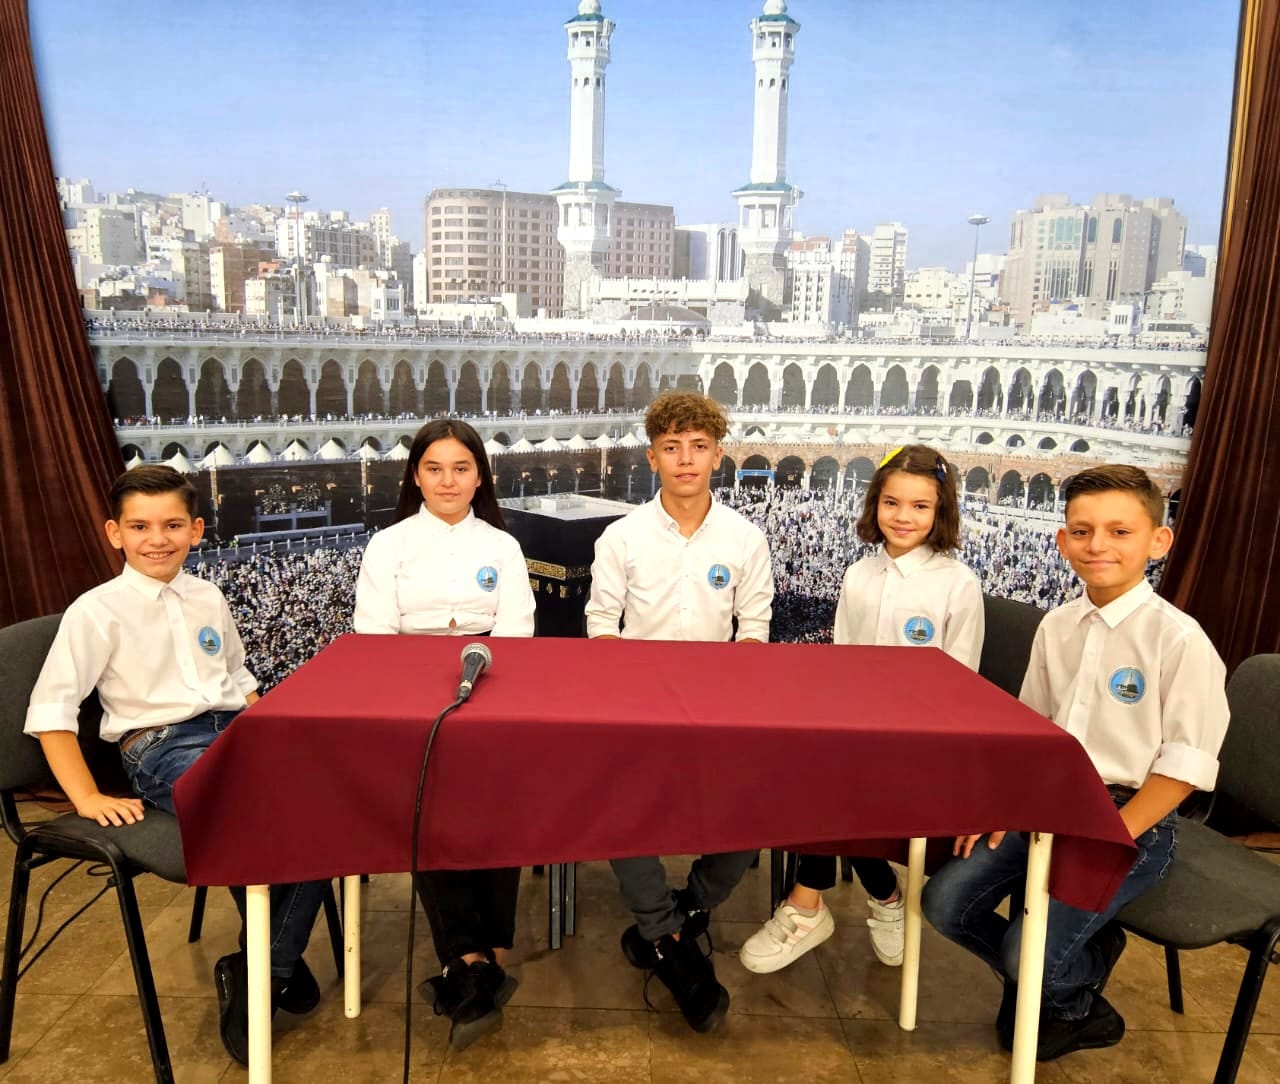 فاز أطفال كتًاب المسجد المركزي في منطقة “جور” بمحافظة بريزرن في جنوب كوسوفا بالمسابقة السنوية للمساجد.